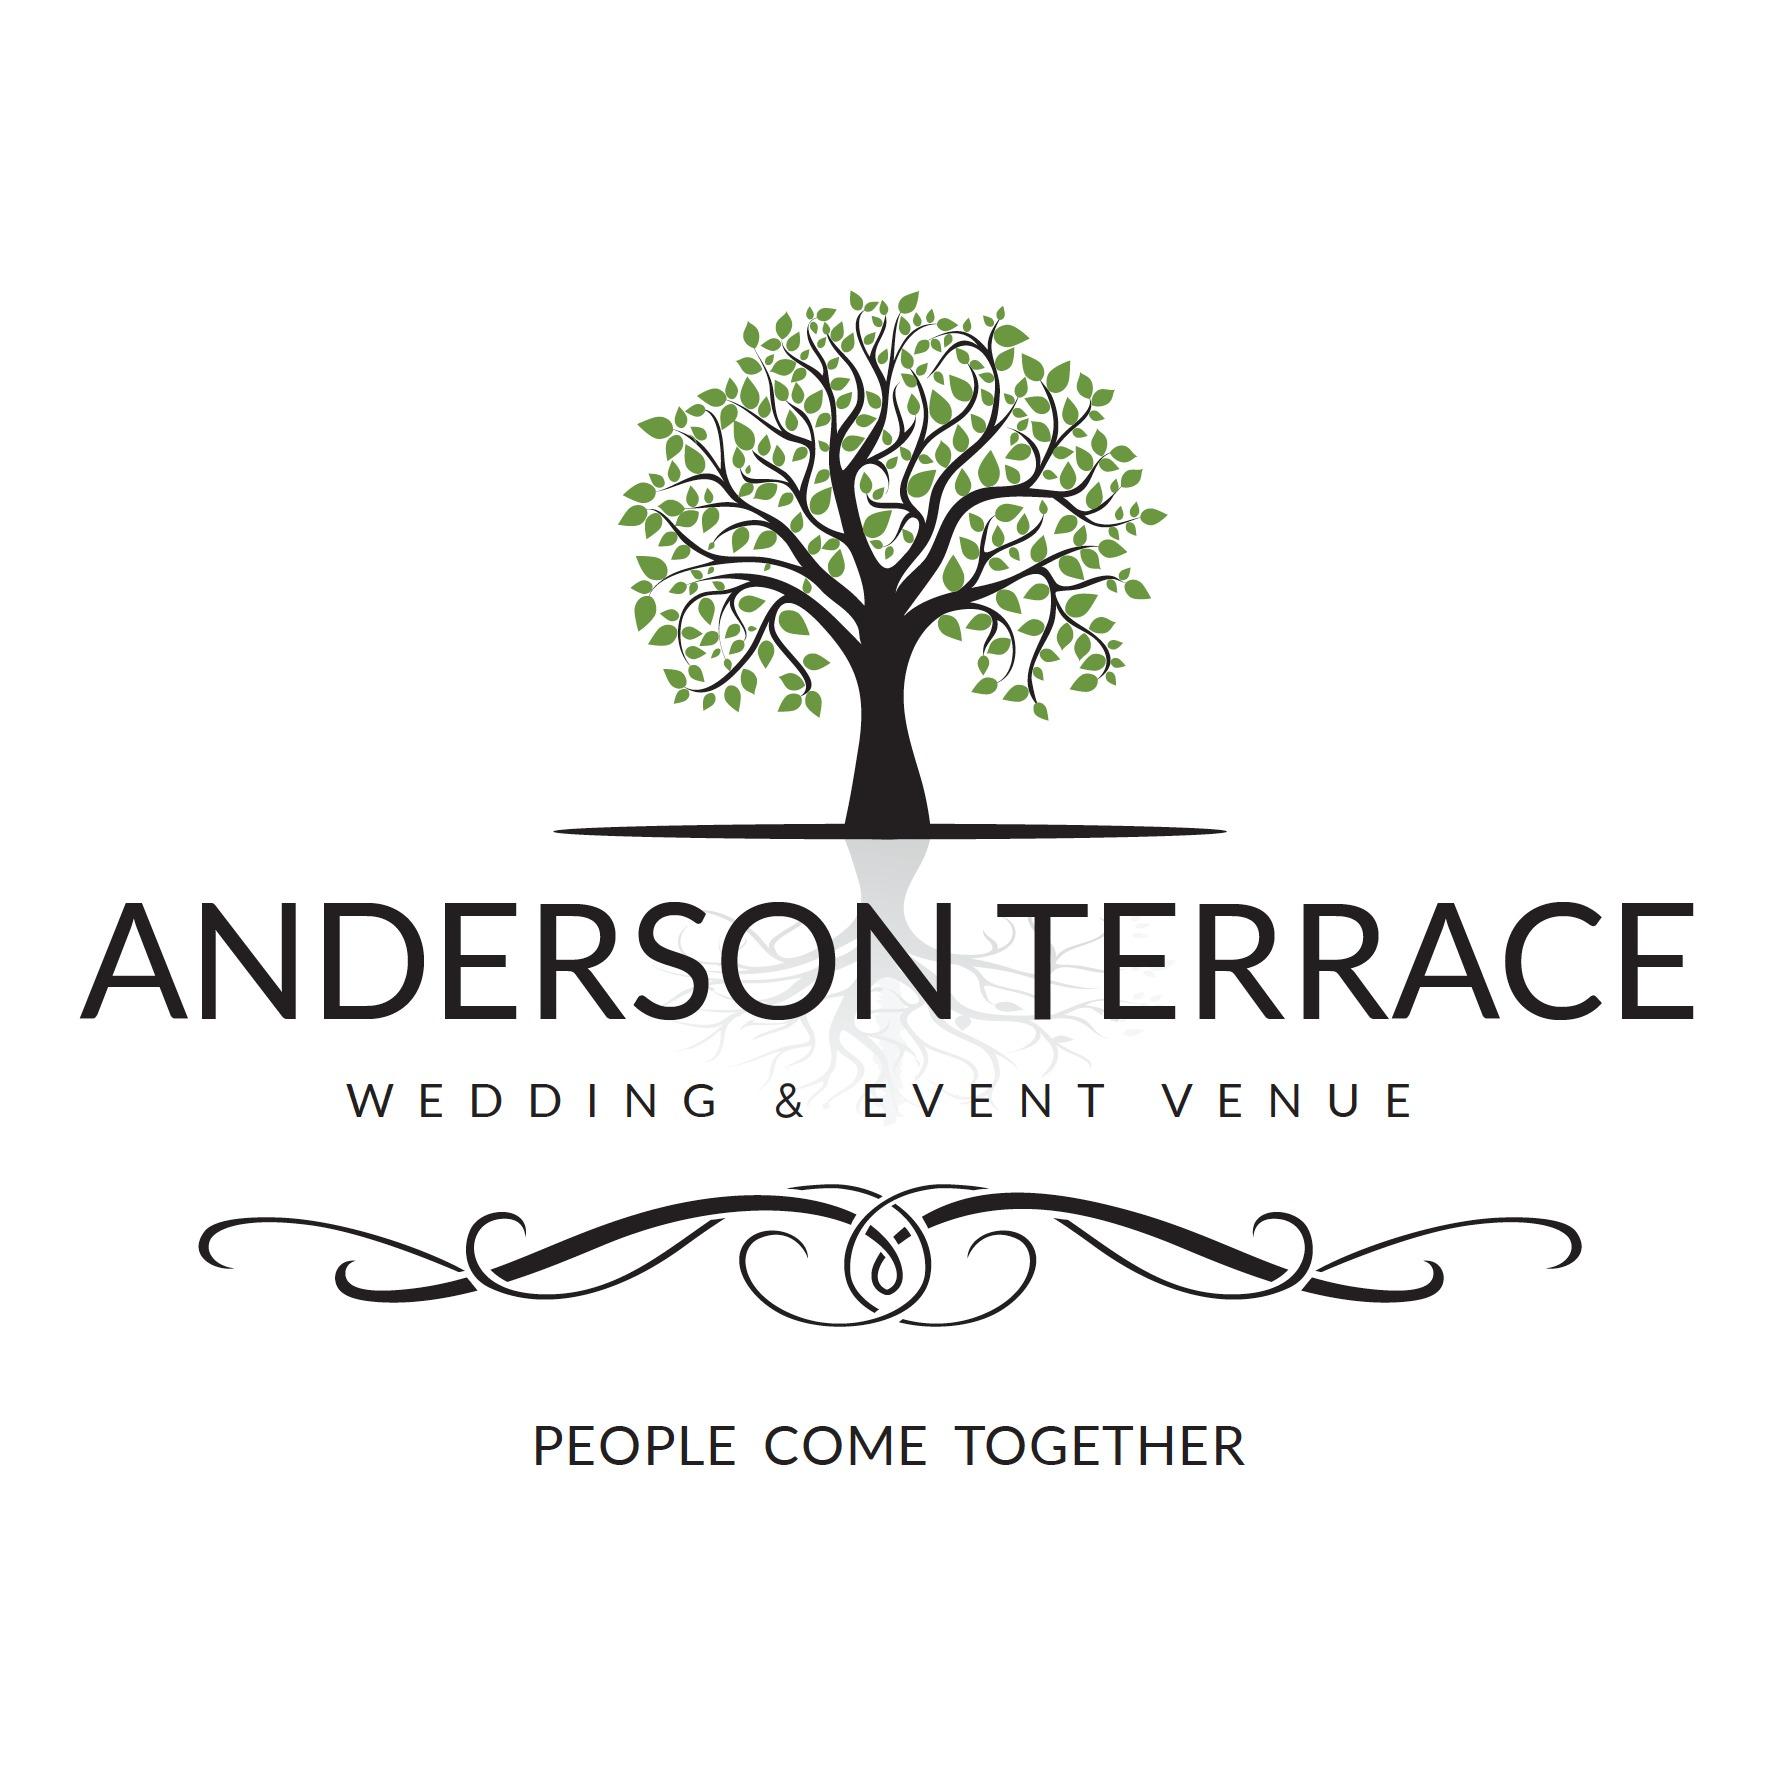 Anderson Terrace Wedding & Event Venue Logo